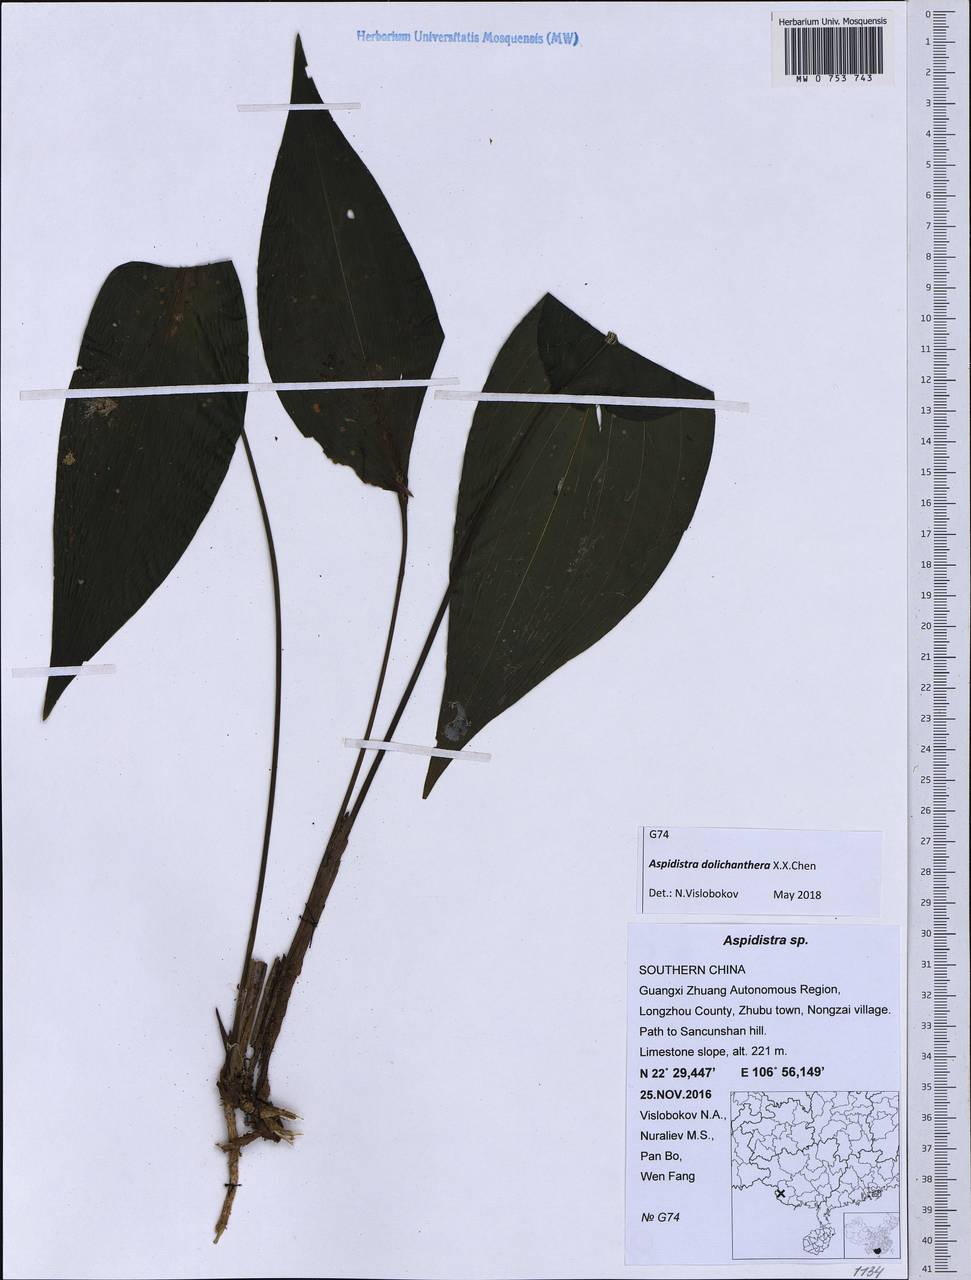 Aspidistra dolichanthera X.X.Chen, South Asia, South Asia (Asia outside ex-Soviet states and Mongolia) (ASIA) (China)